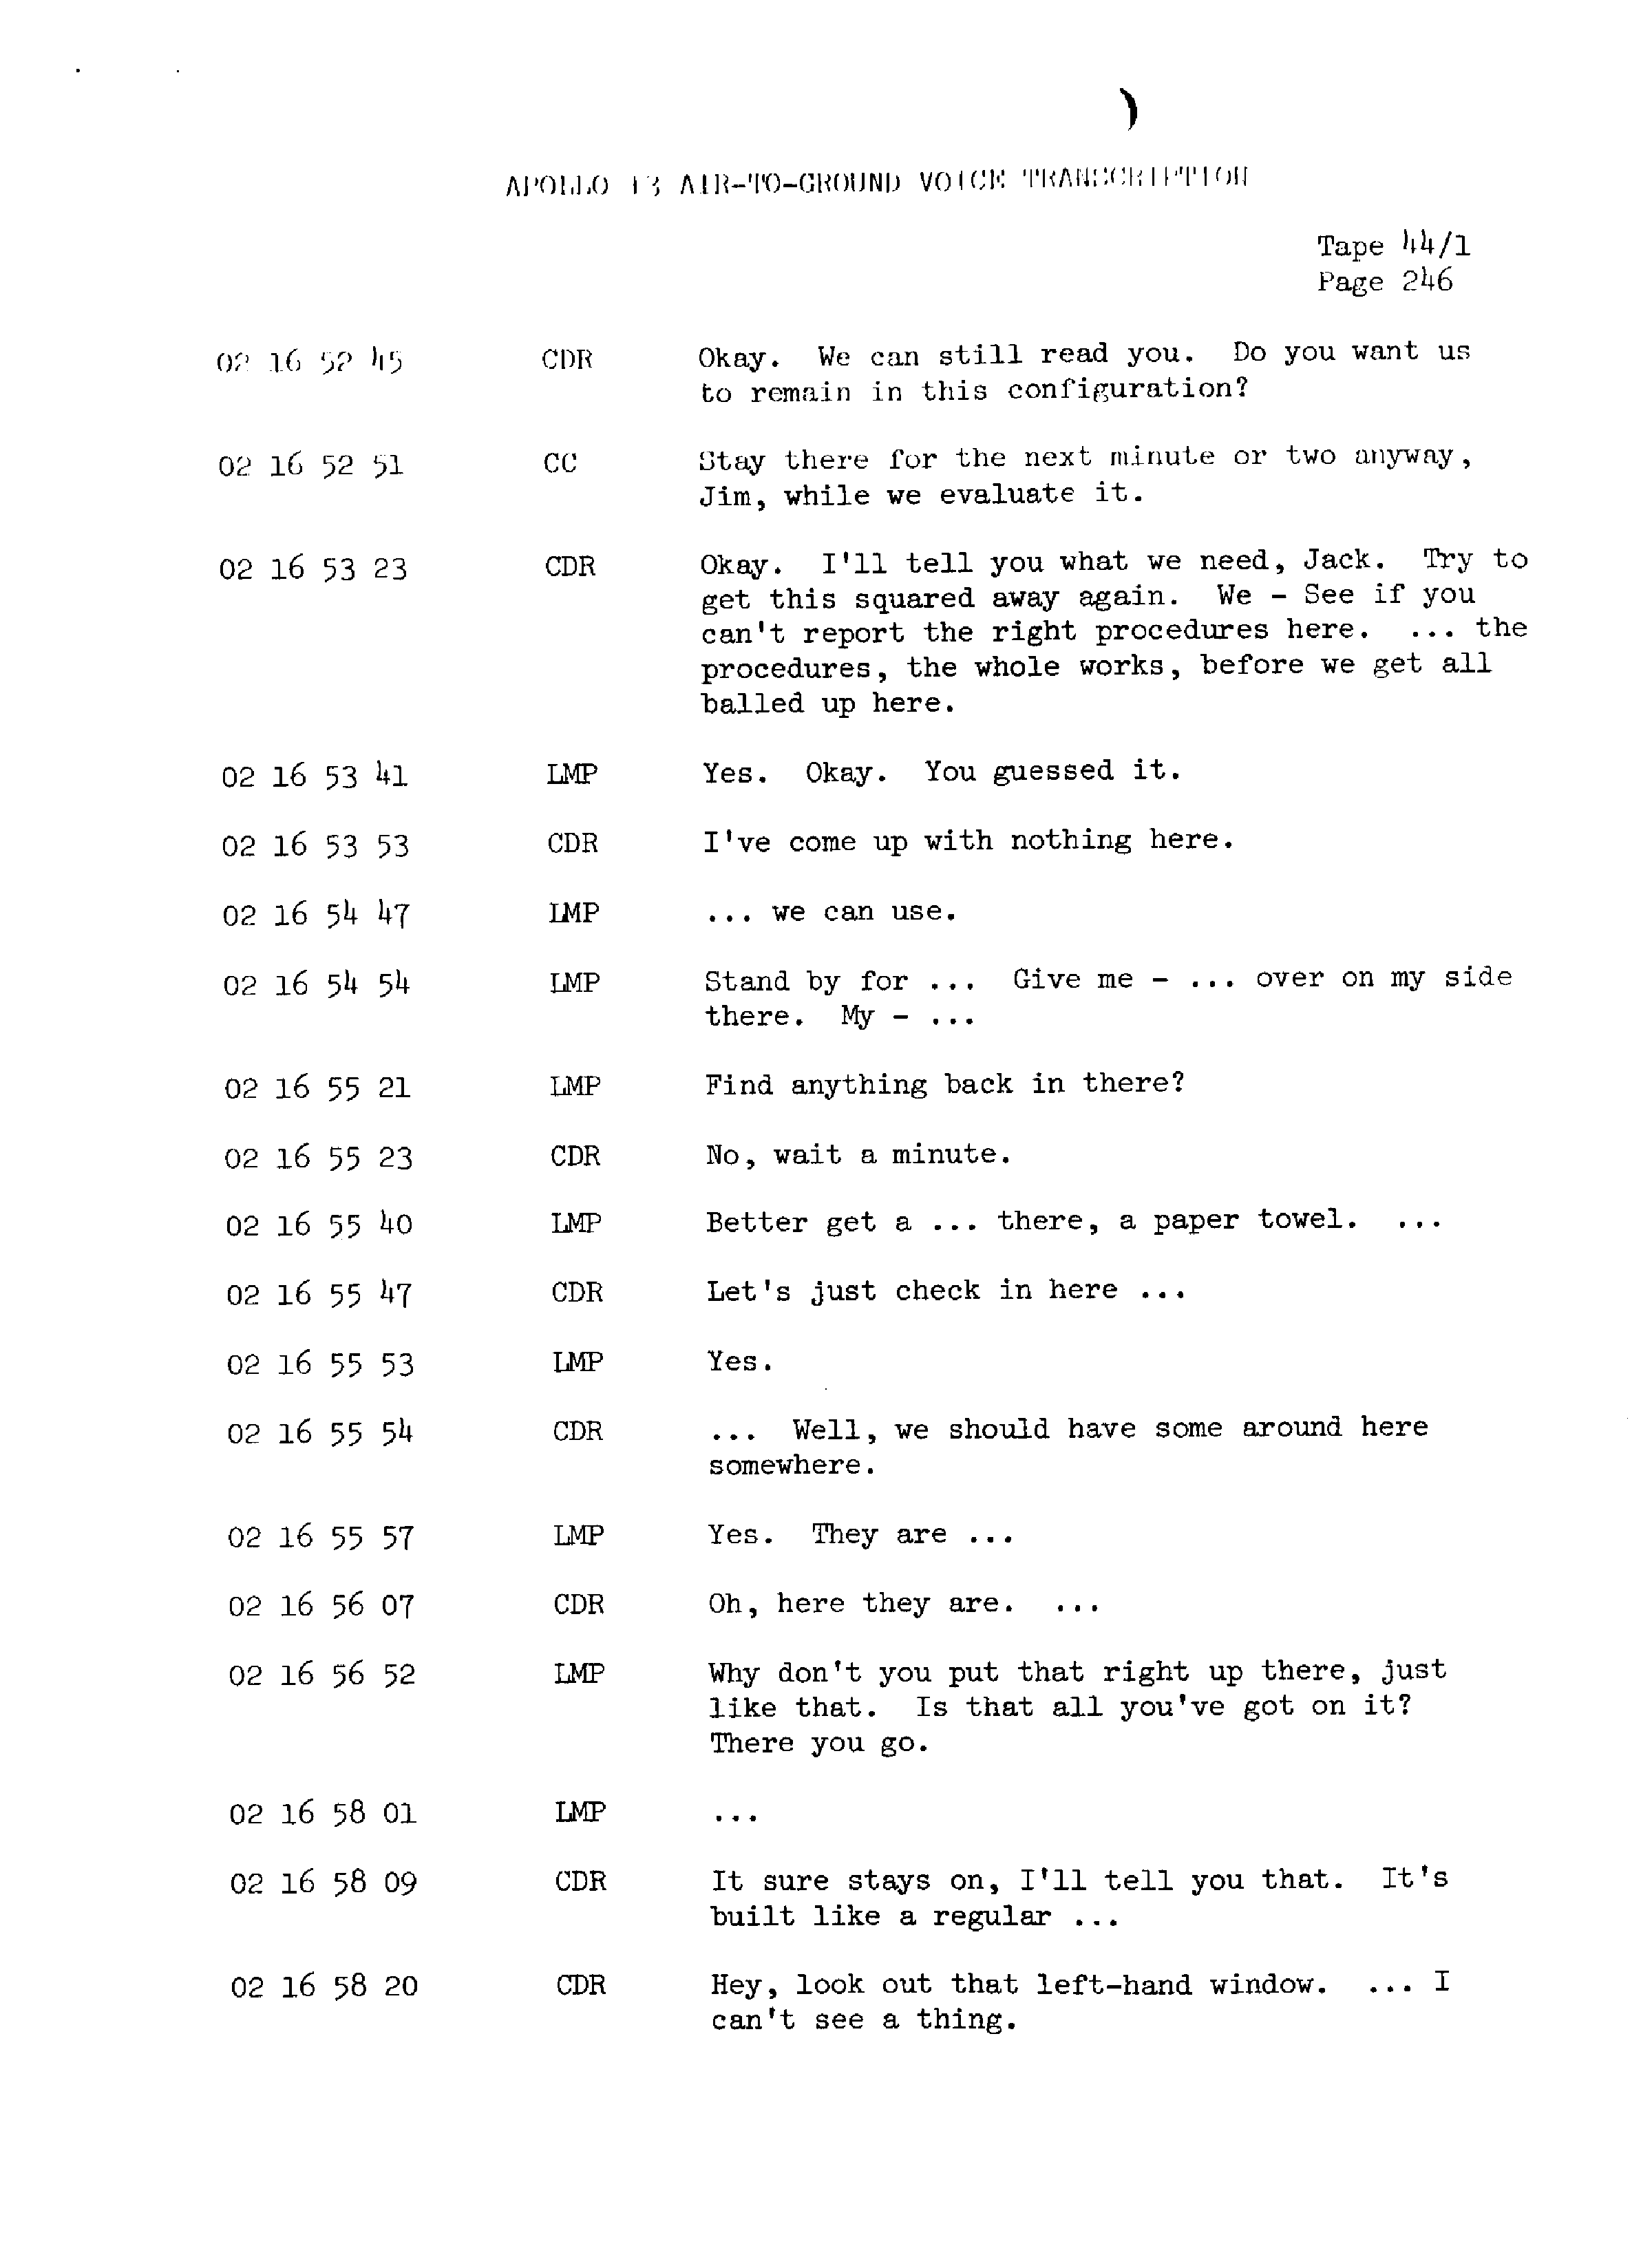 Page 253 of Apollo 13’s original transcript